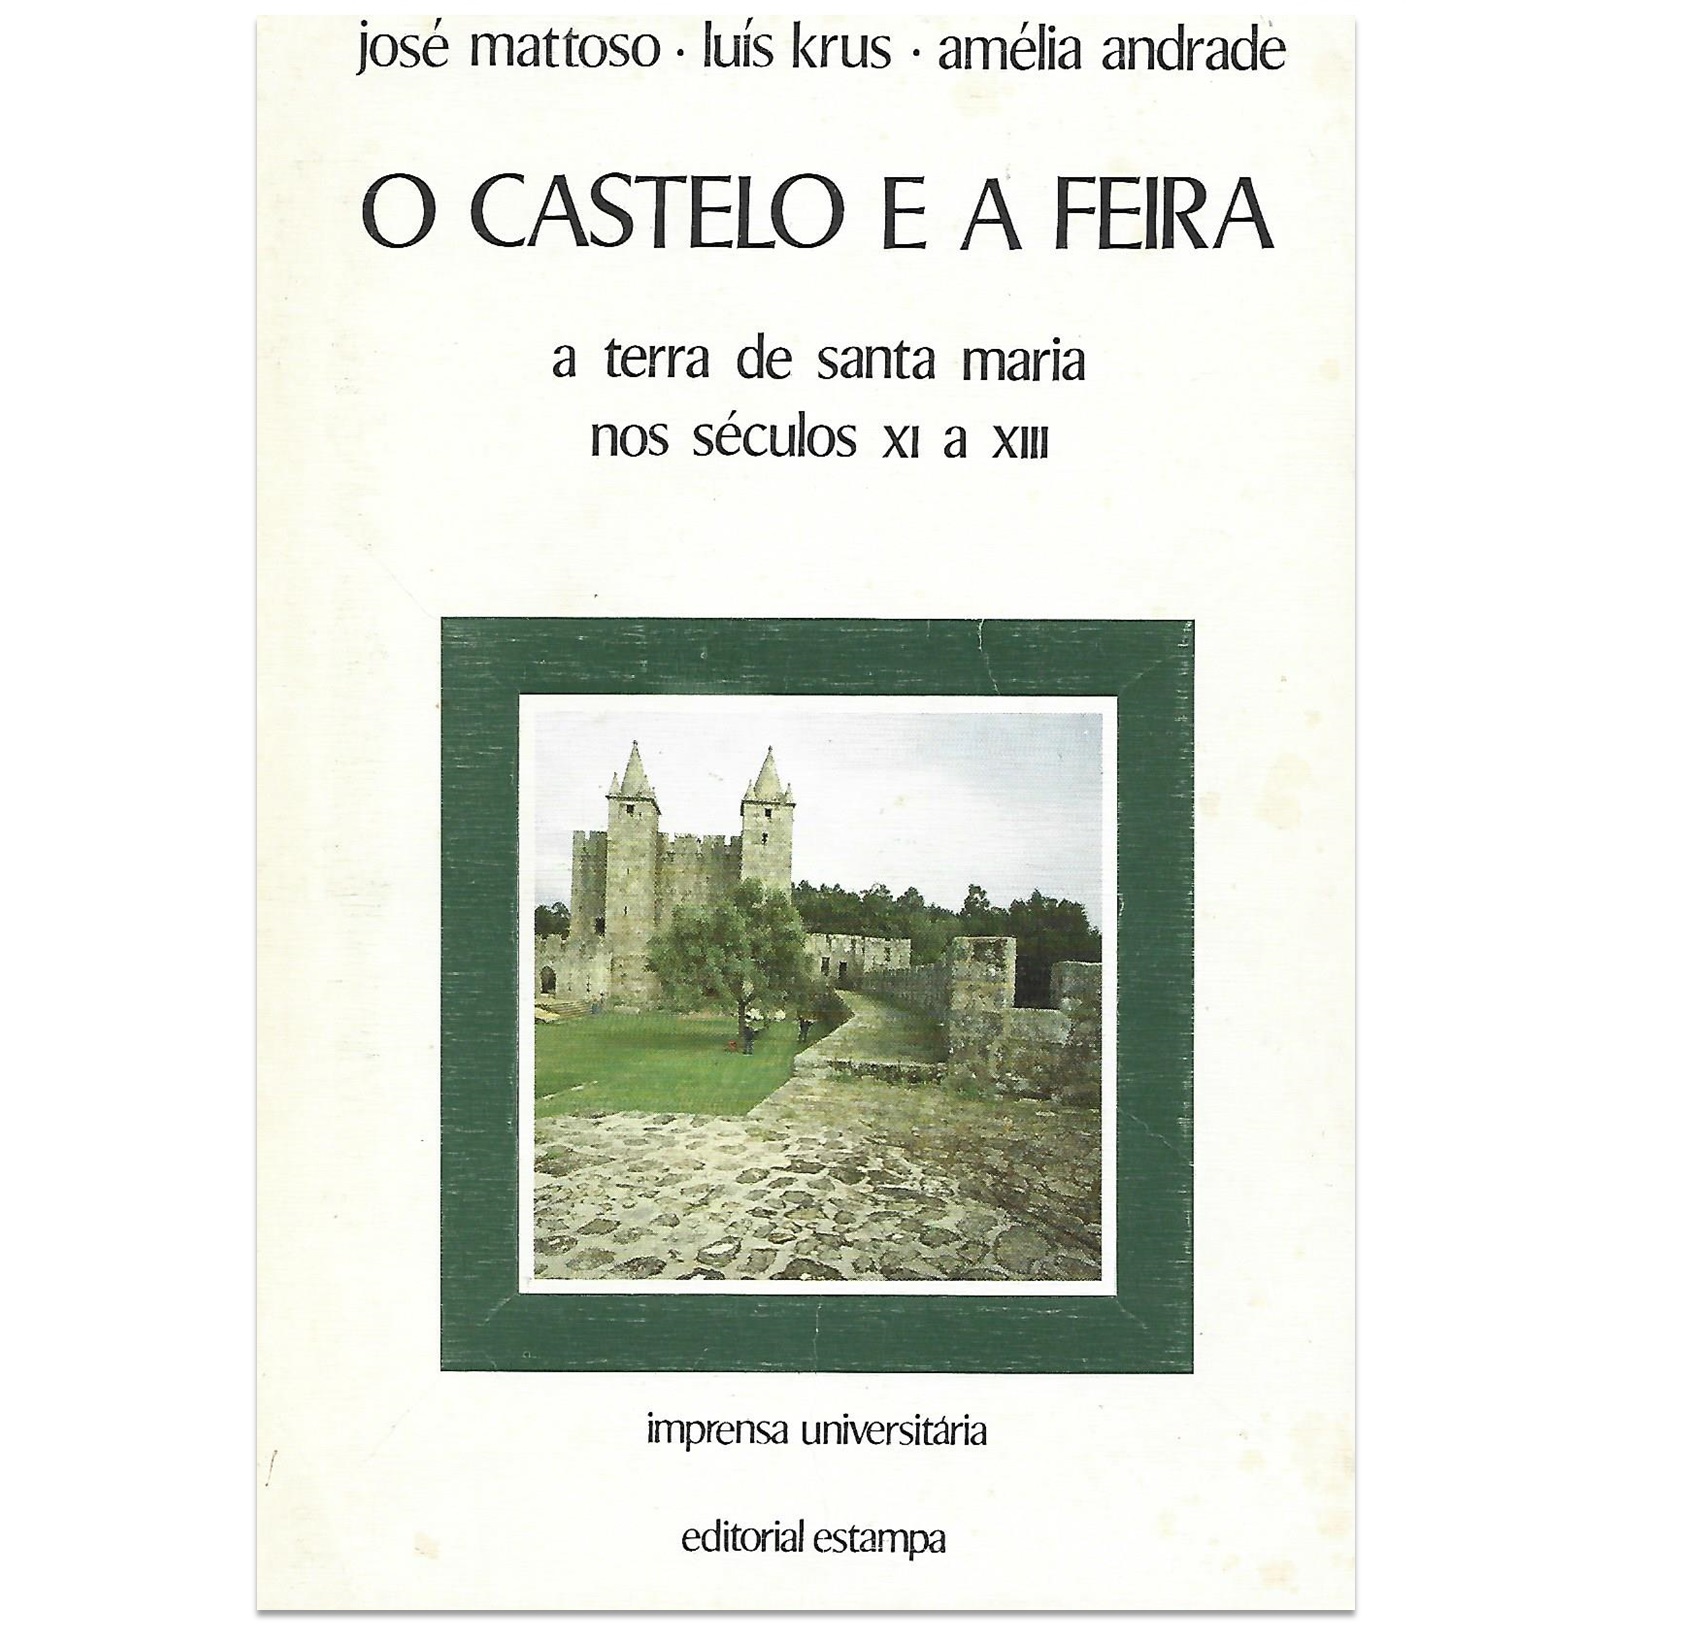 O CASTELO E A FEIRA: A TERRA DE SANTA MARIA NOS SÉCULOS XI A XIII.